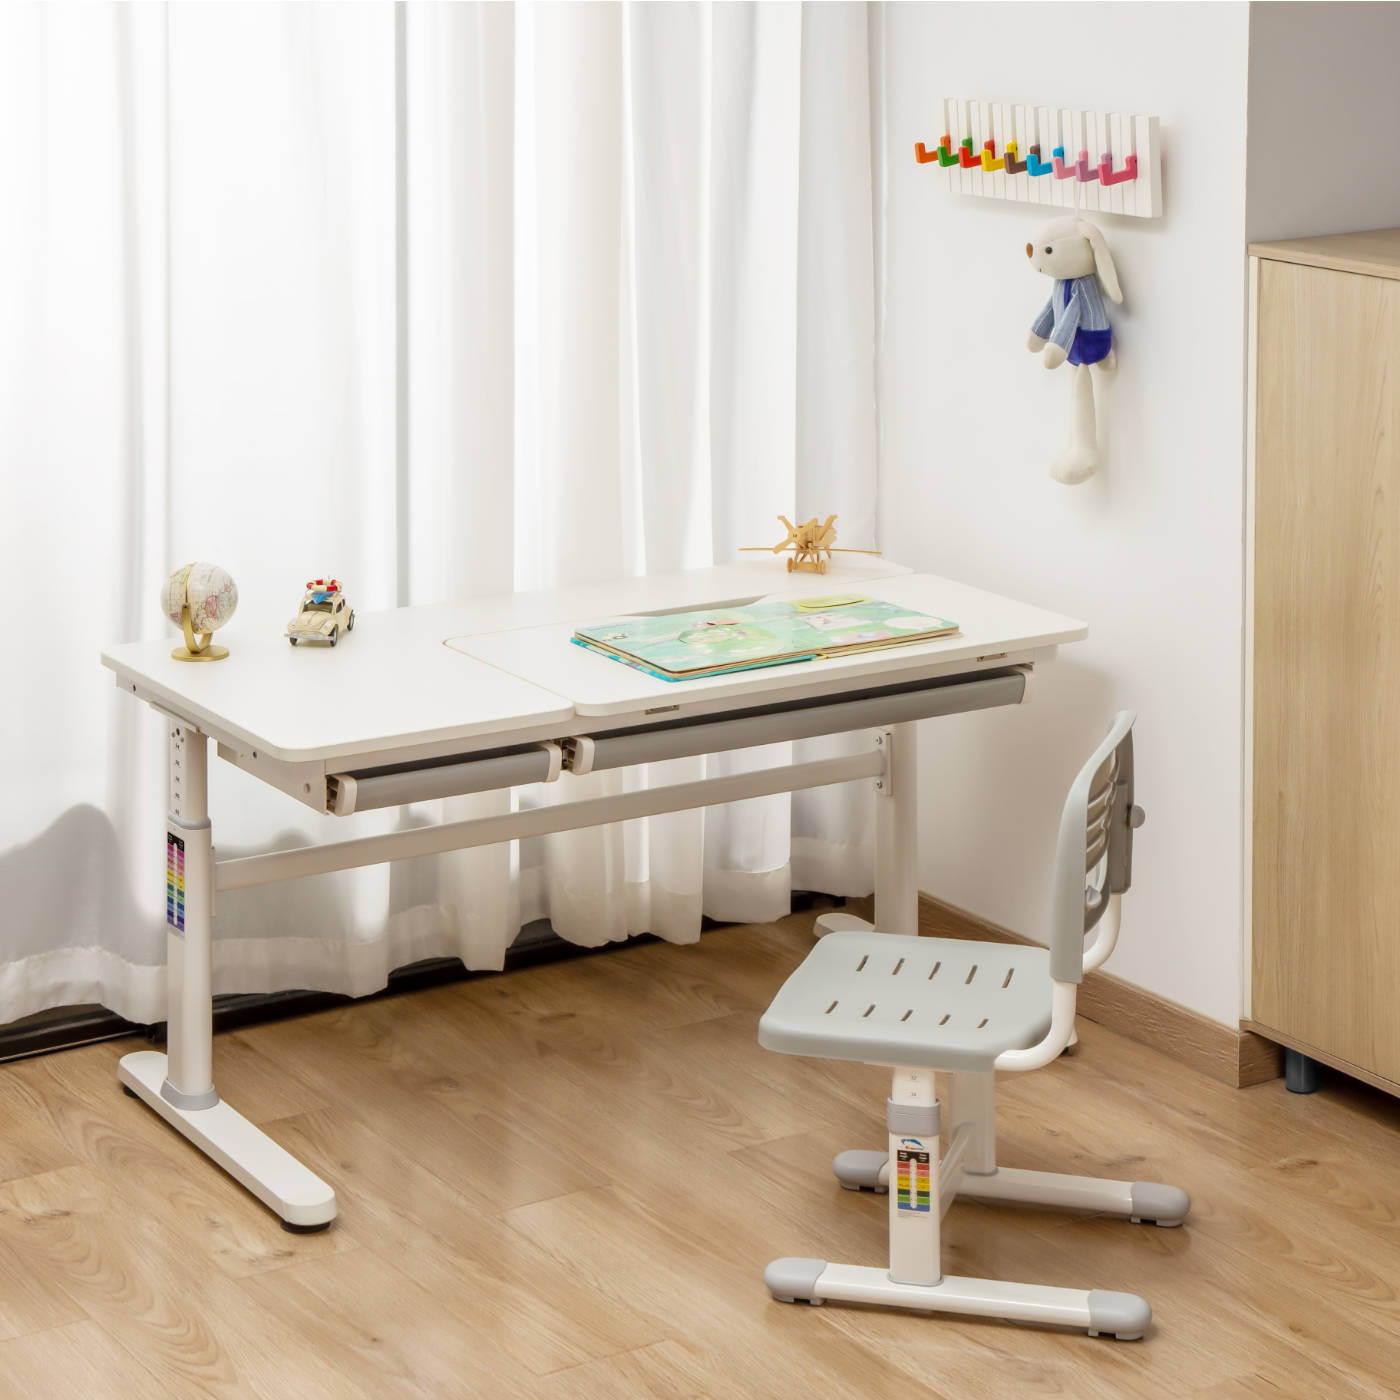 ELIN-Ergo-Study-Table manuell höhenverstellbar Kinder-Schreibtisch mit verstellbarer Tischplatte, Weiß